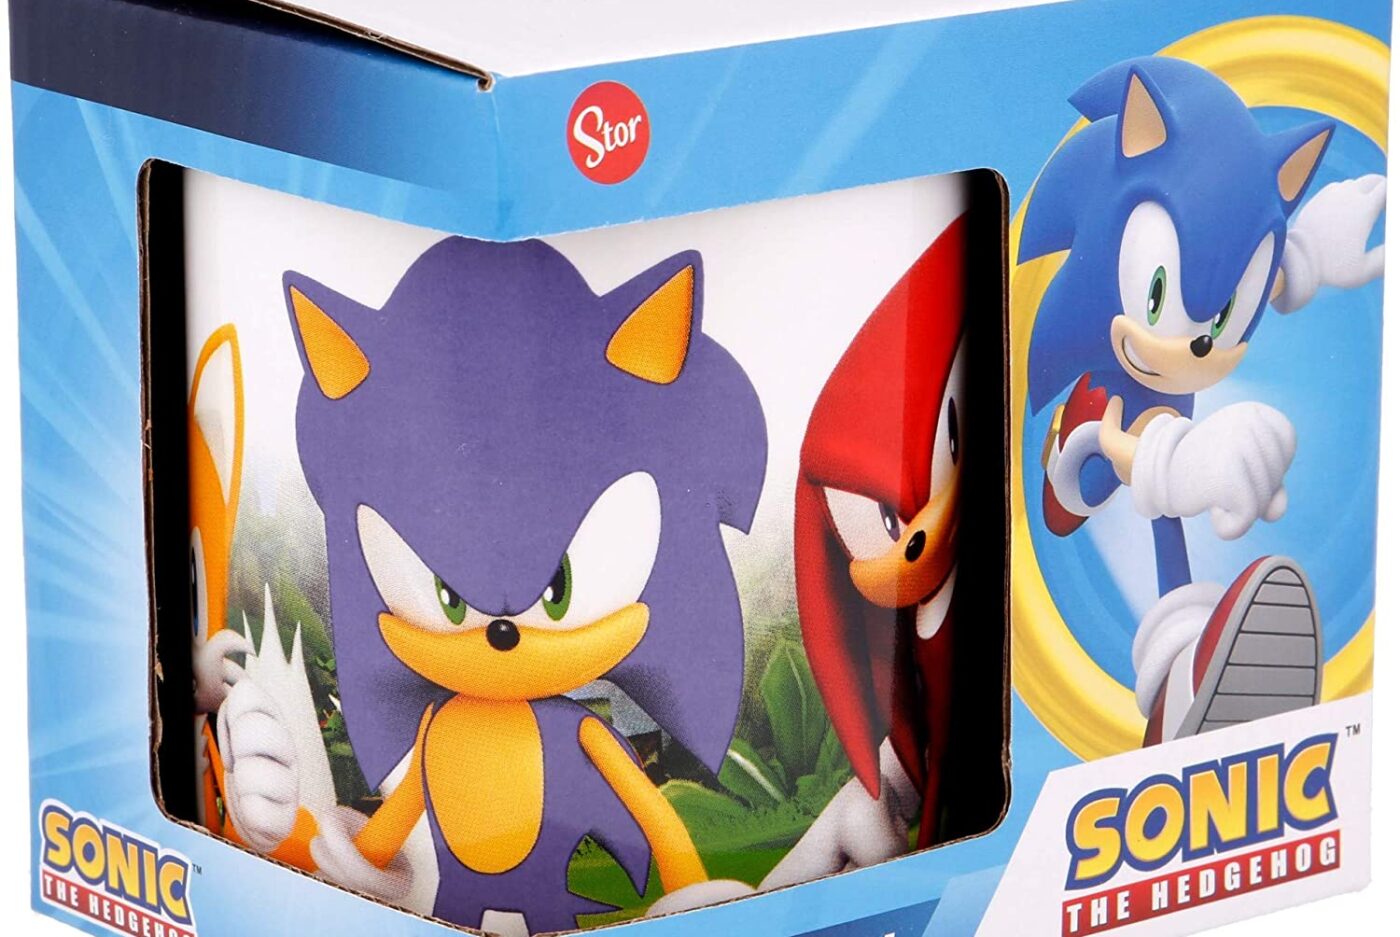 Taza cerámica Sonic en caja de regalo